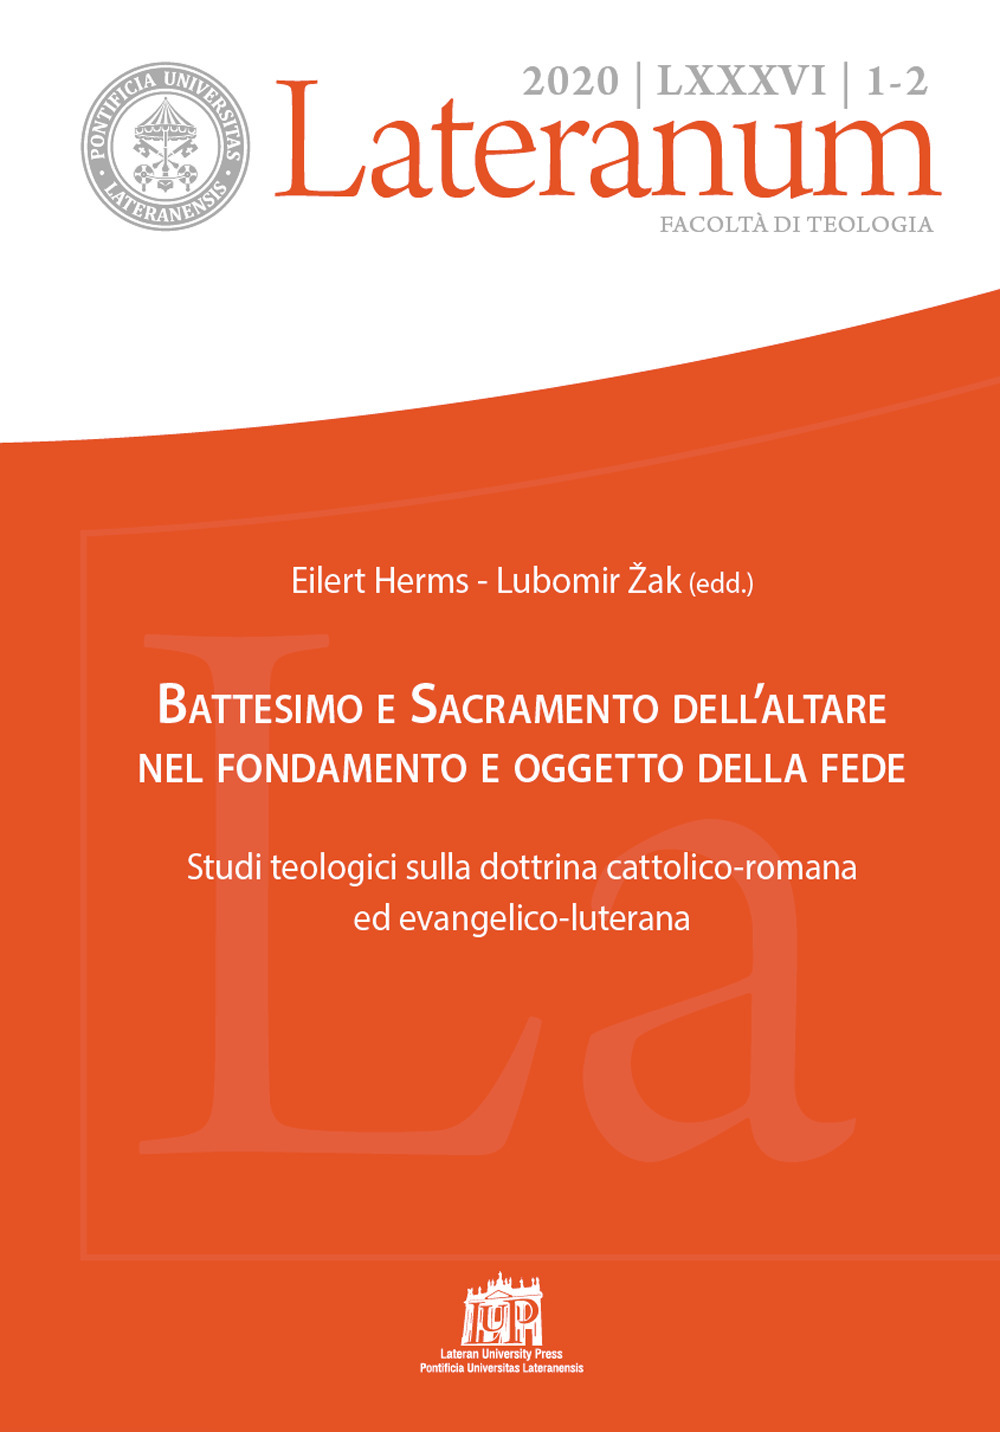 Lateranum (2020). Vol. 1-2: Battesimo e Sacramento dell'altare nel fondamento e oggetto della fede. Studi teologici sulla dottrina cattolico-romana ed evangelico-luterana